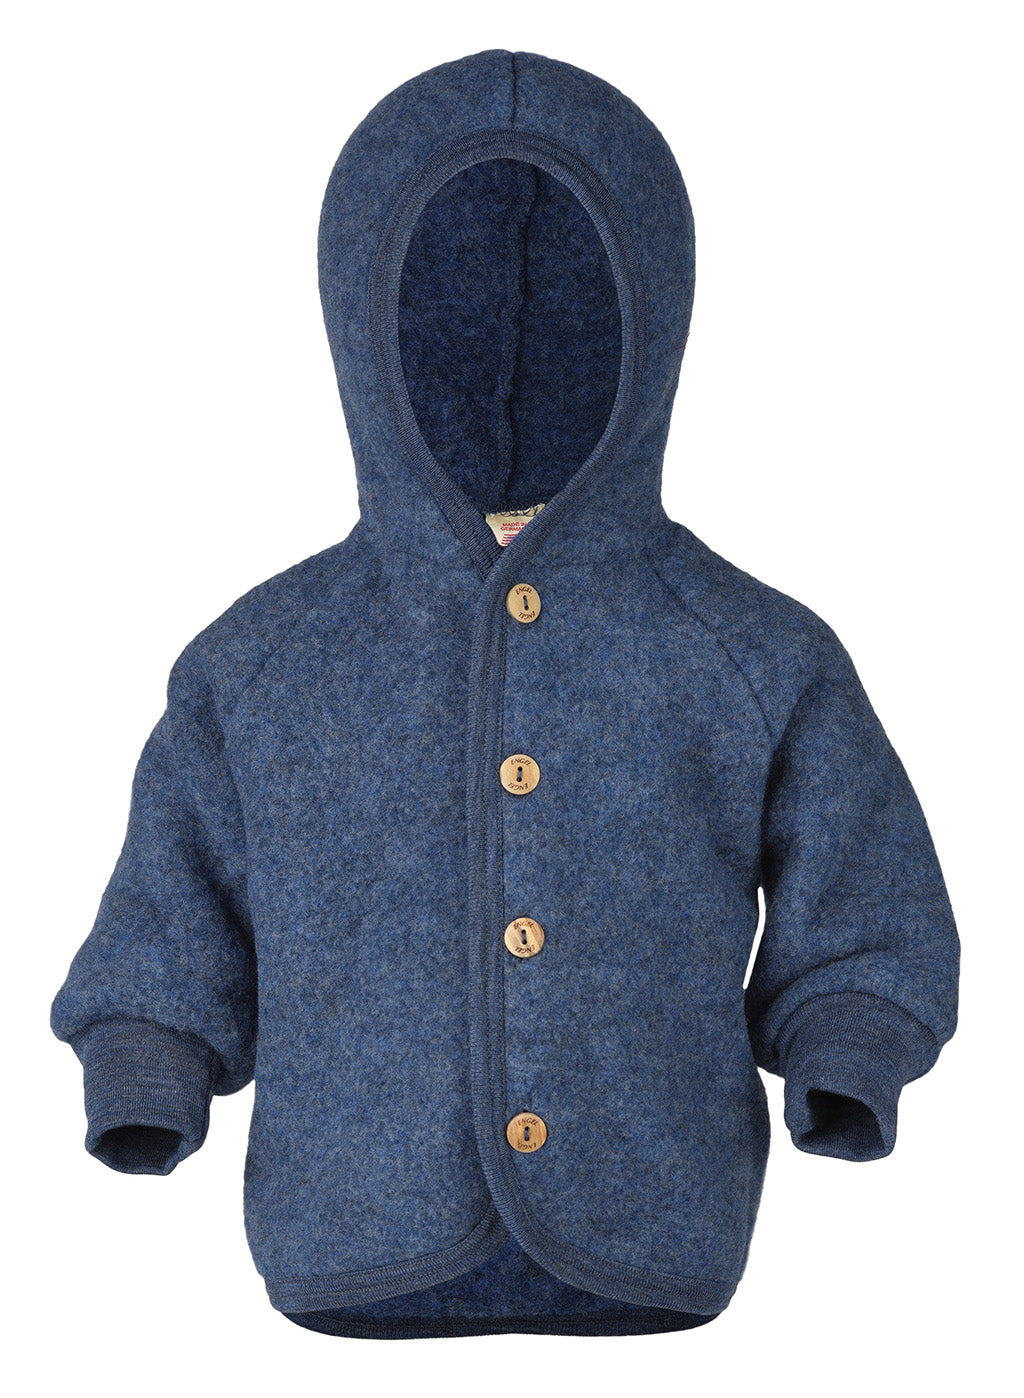 Engel hooded fleece jacket in blue melange.